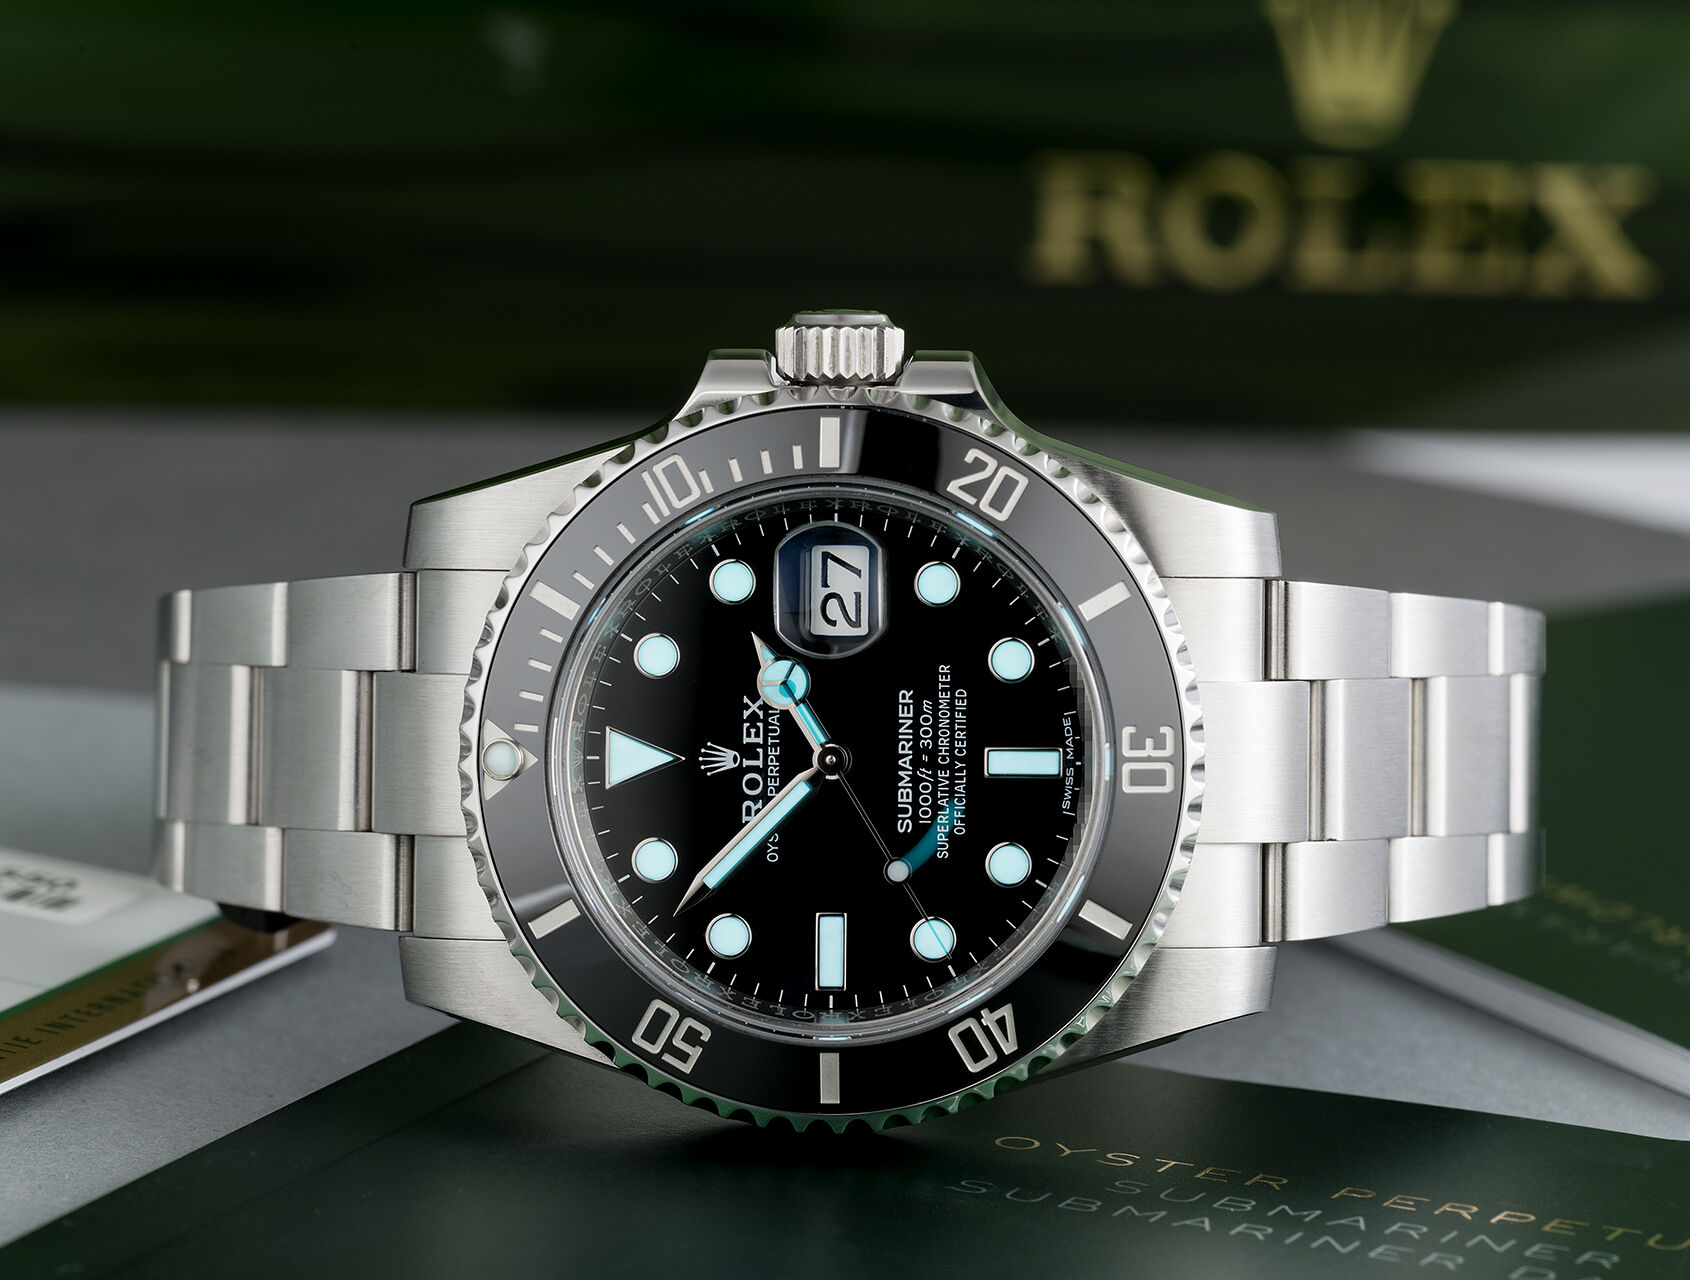 ref 116610LN | Full Set '5 Year Warranty' | Rolex Submariner Date